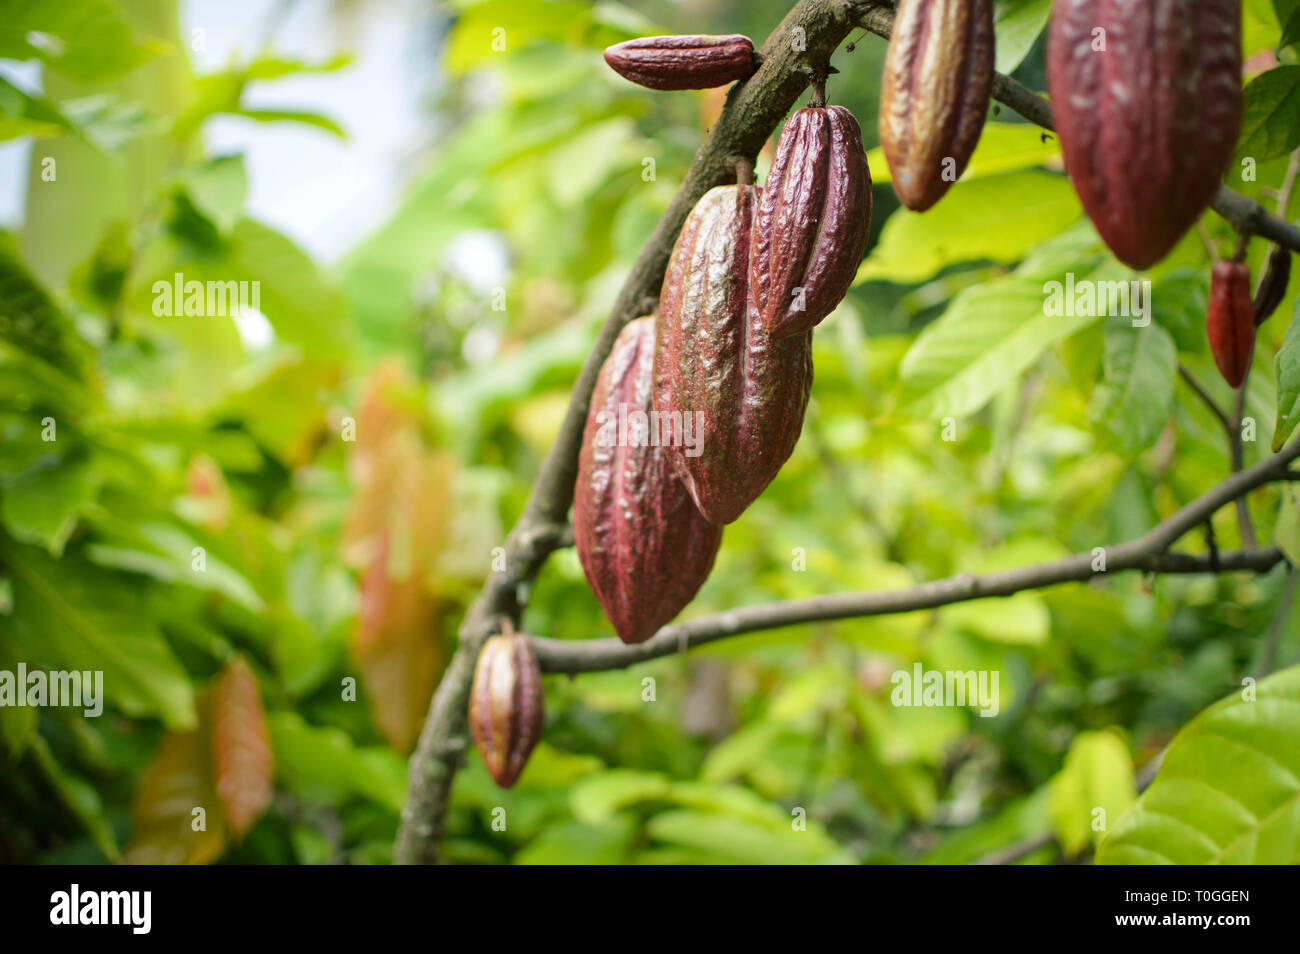 Fruits de cacao et des arbres dans les hautes terres de l'île Samosir au nord de Sumatra, Indonésie Banque D'Images